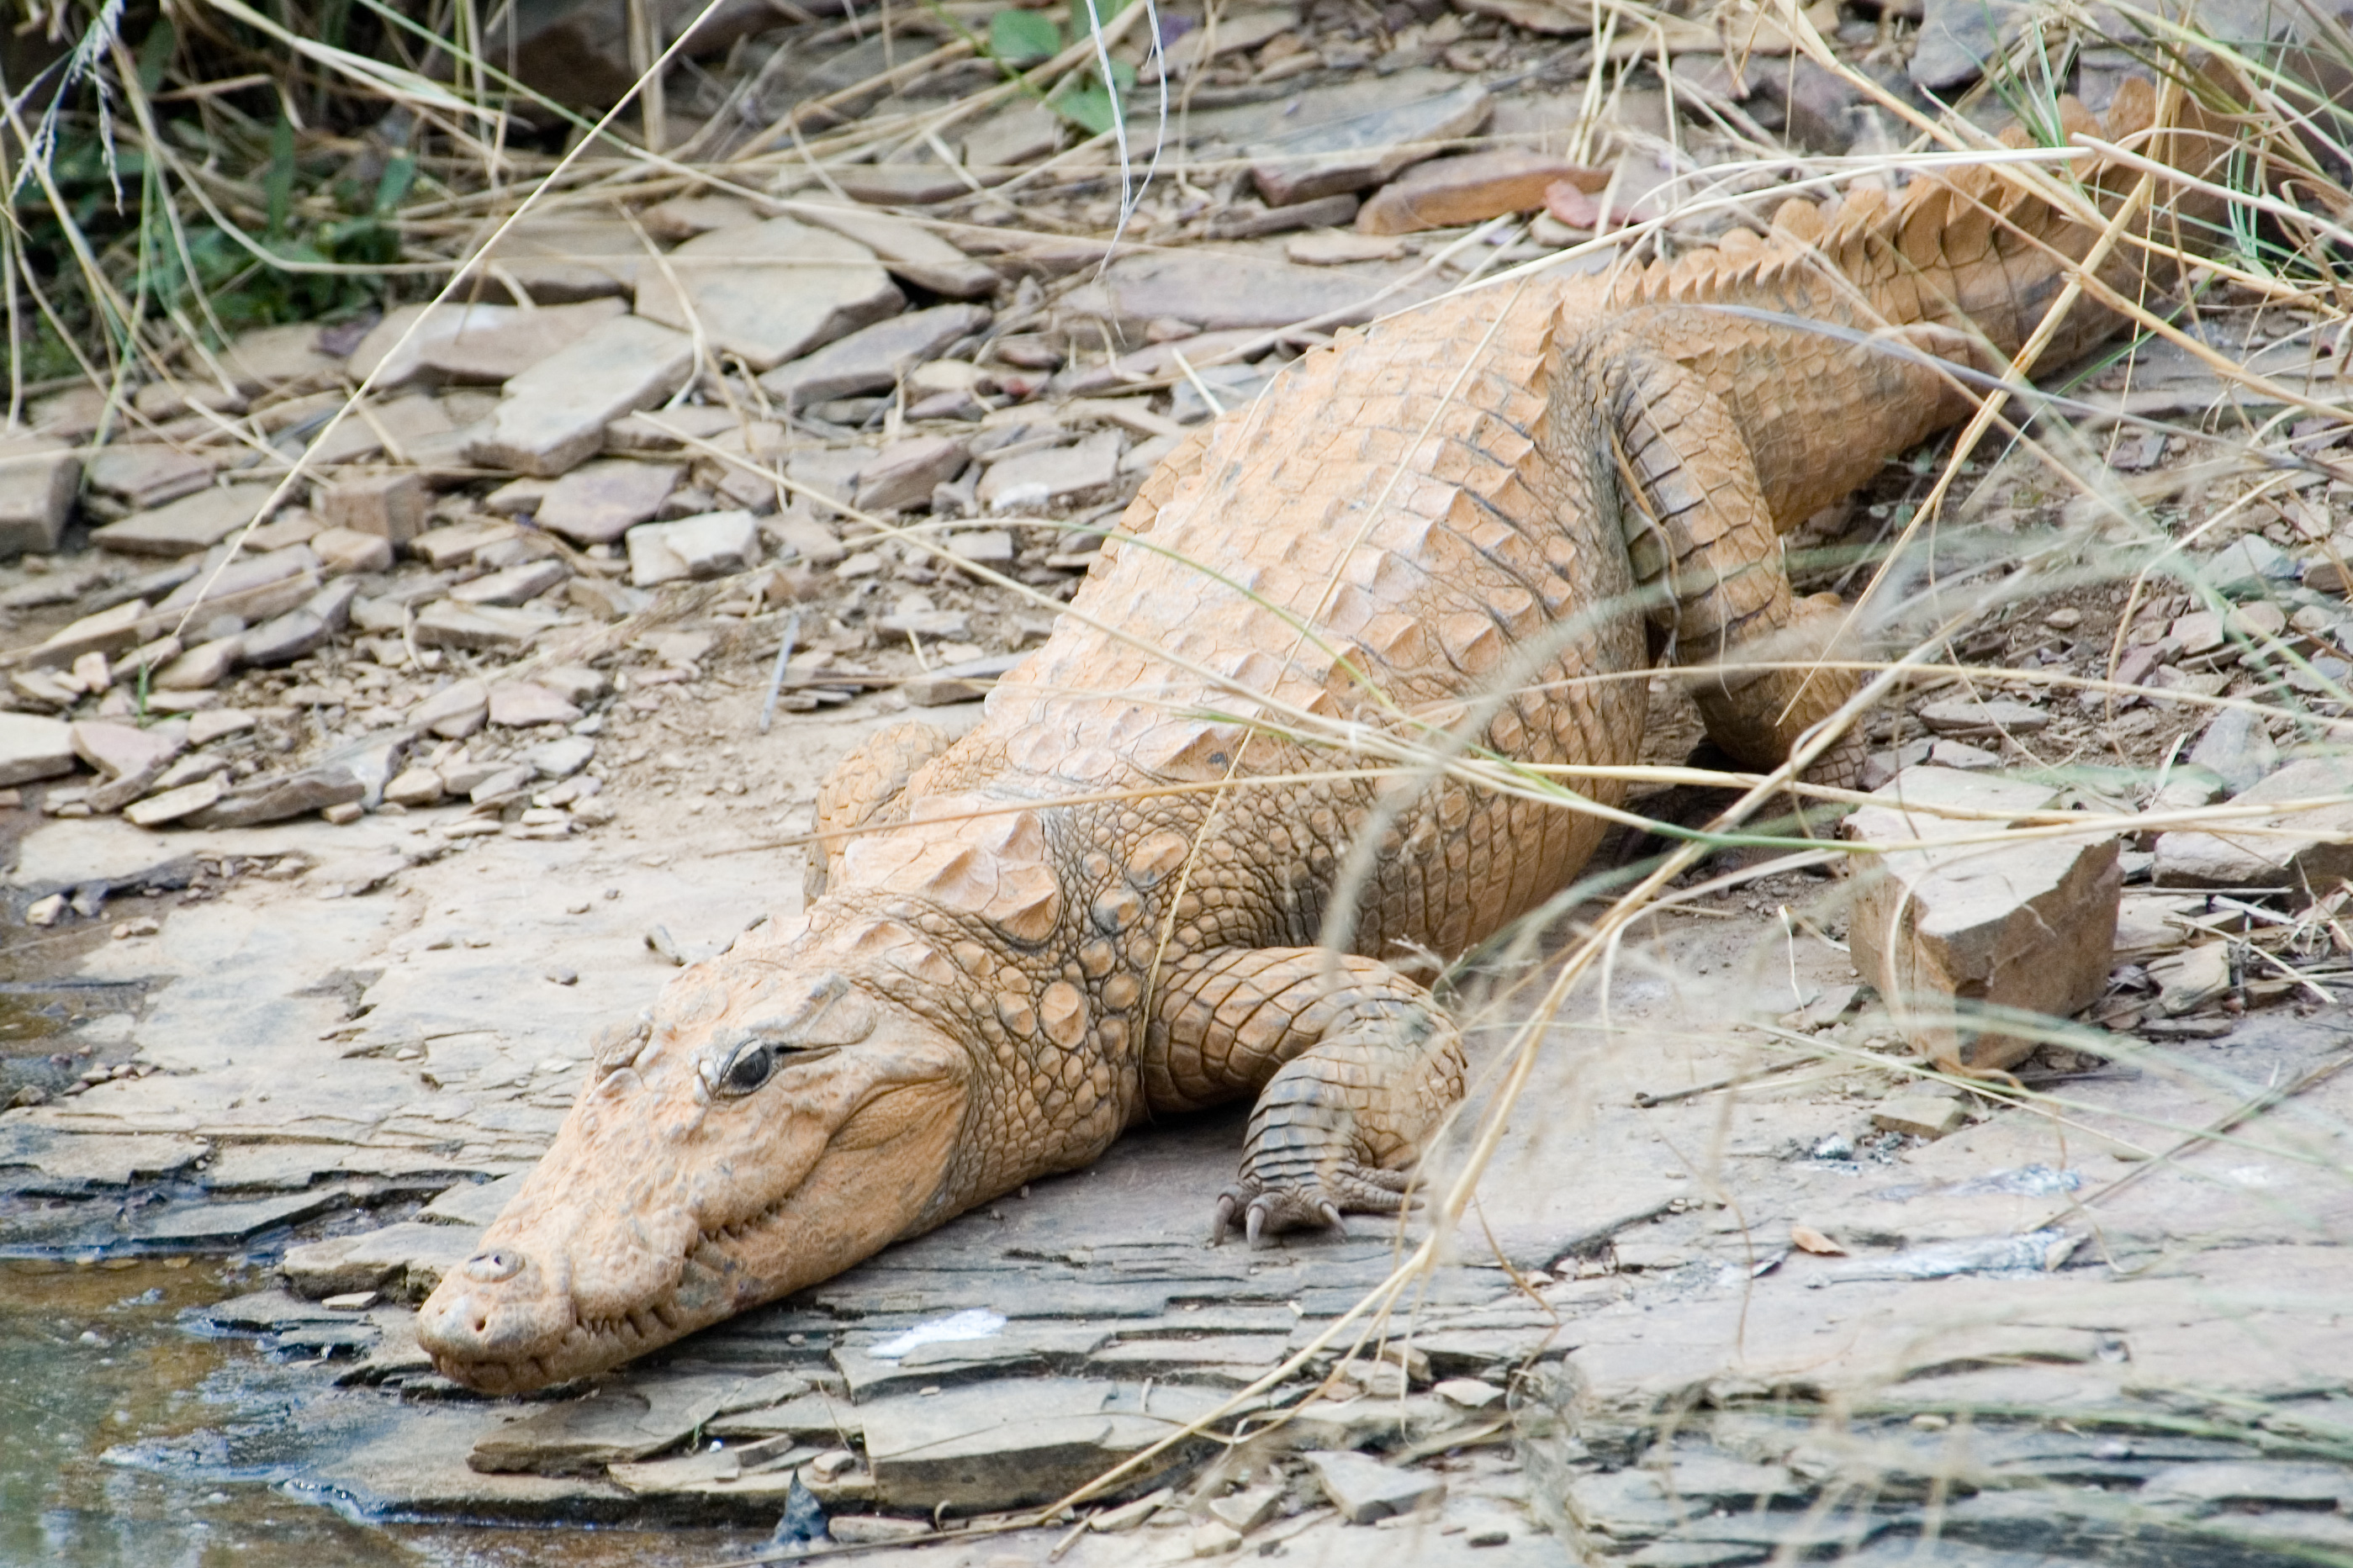 Mugger crocodile rescued near Odisha's Similipal